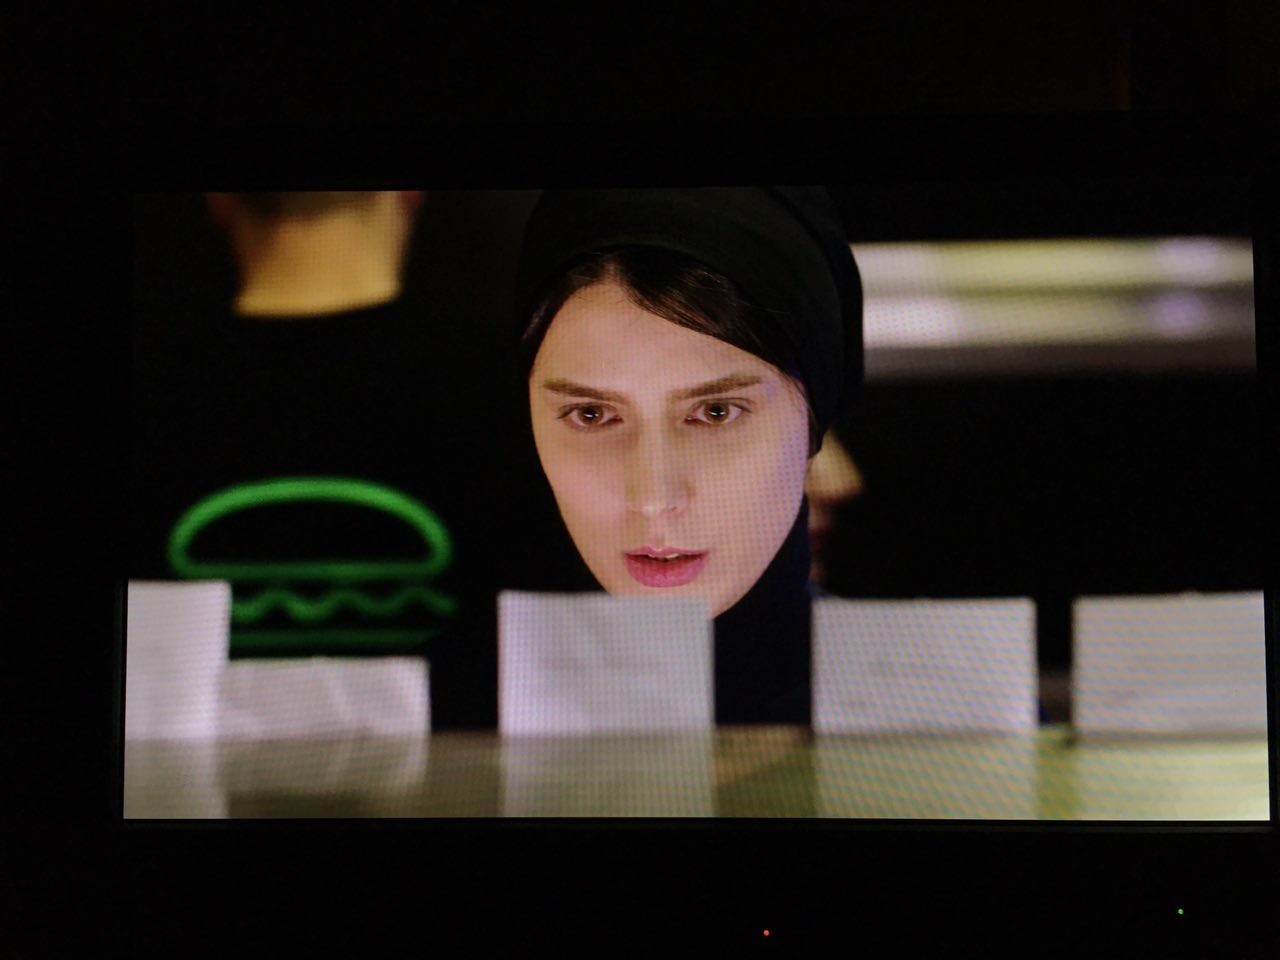 لیلا حاتمی در صحنه فیلم سینمایی رگ خواب